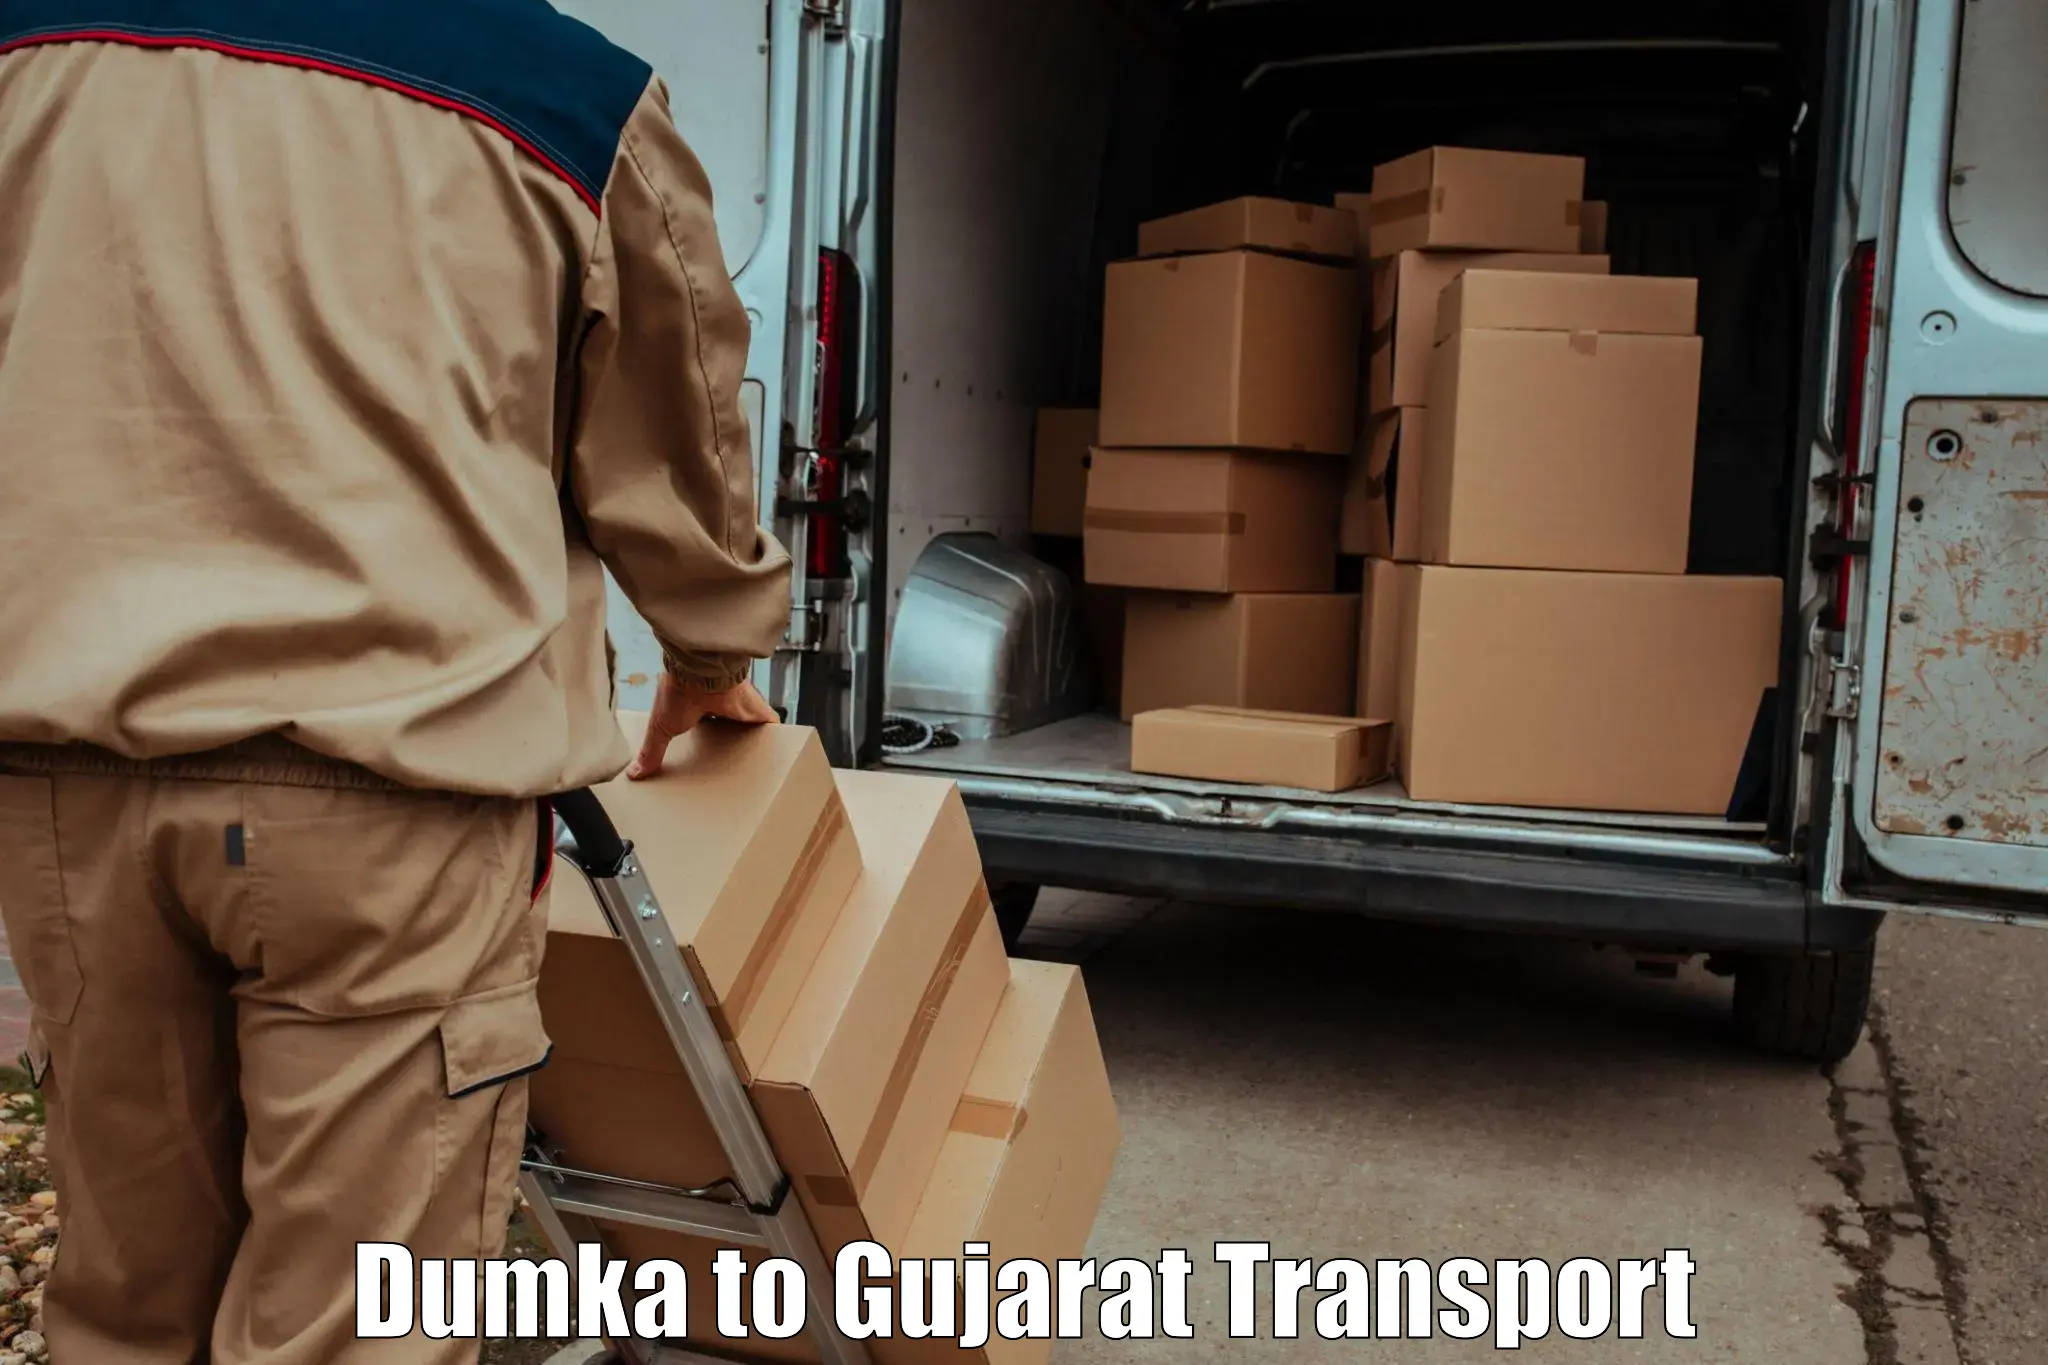 Parcel transport services Dumka to Dhrol